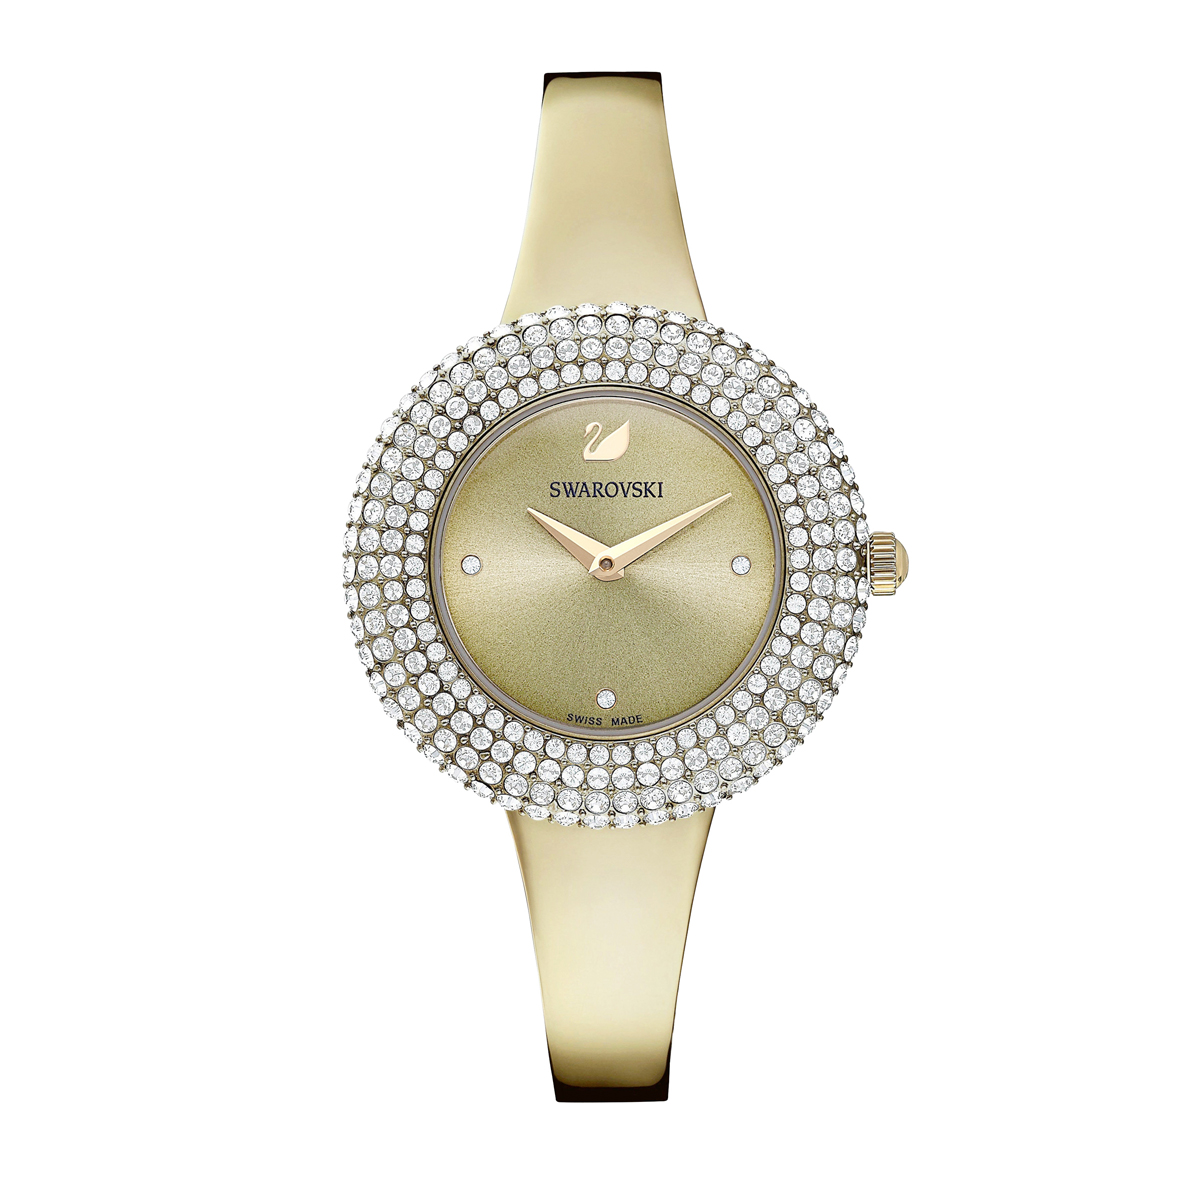 Swarovski Crystal Rose Watch, Metal Bracelet, Golden, Champagne-gold tone